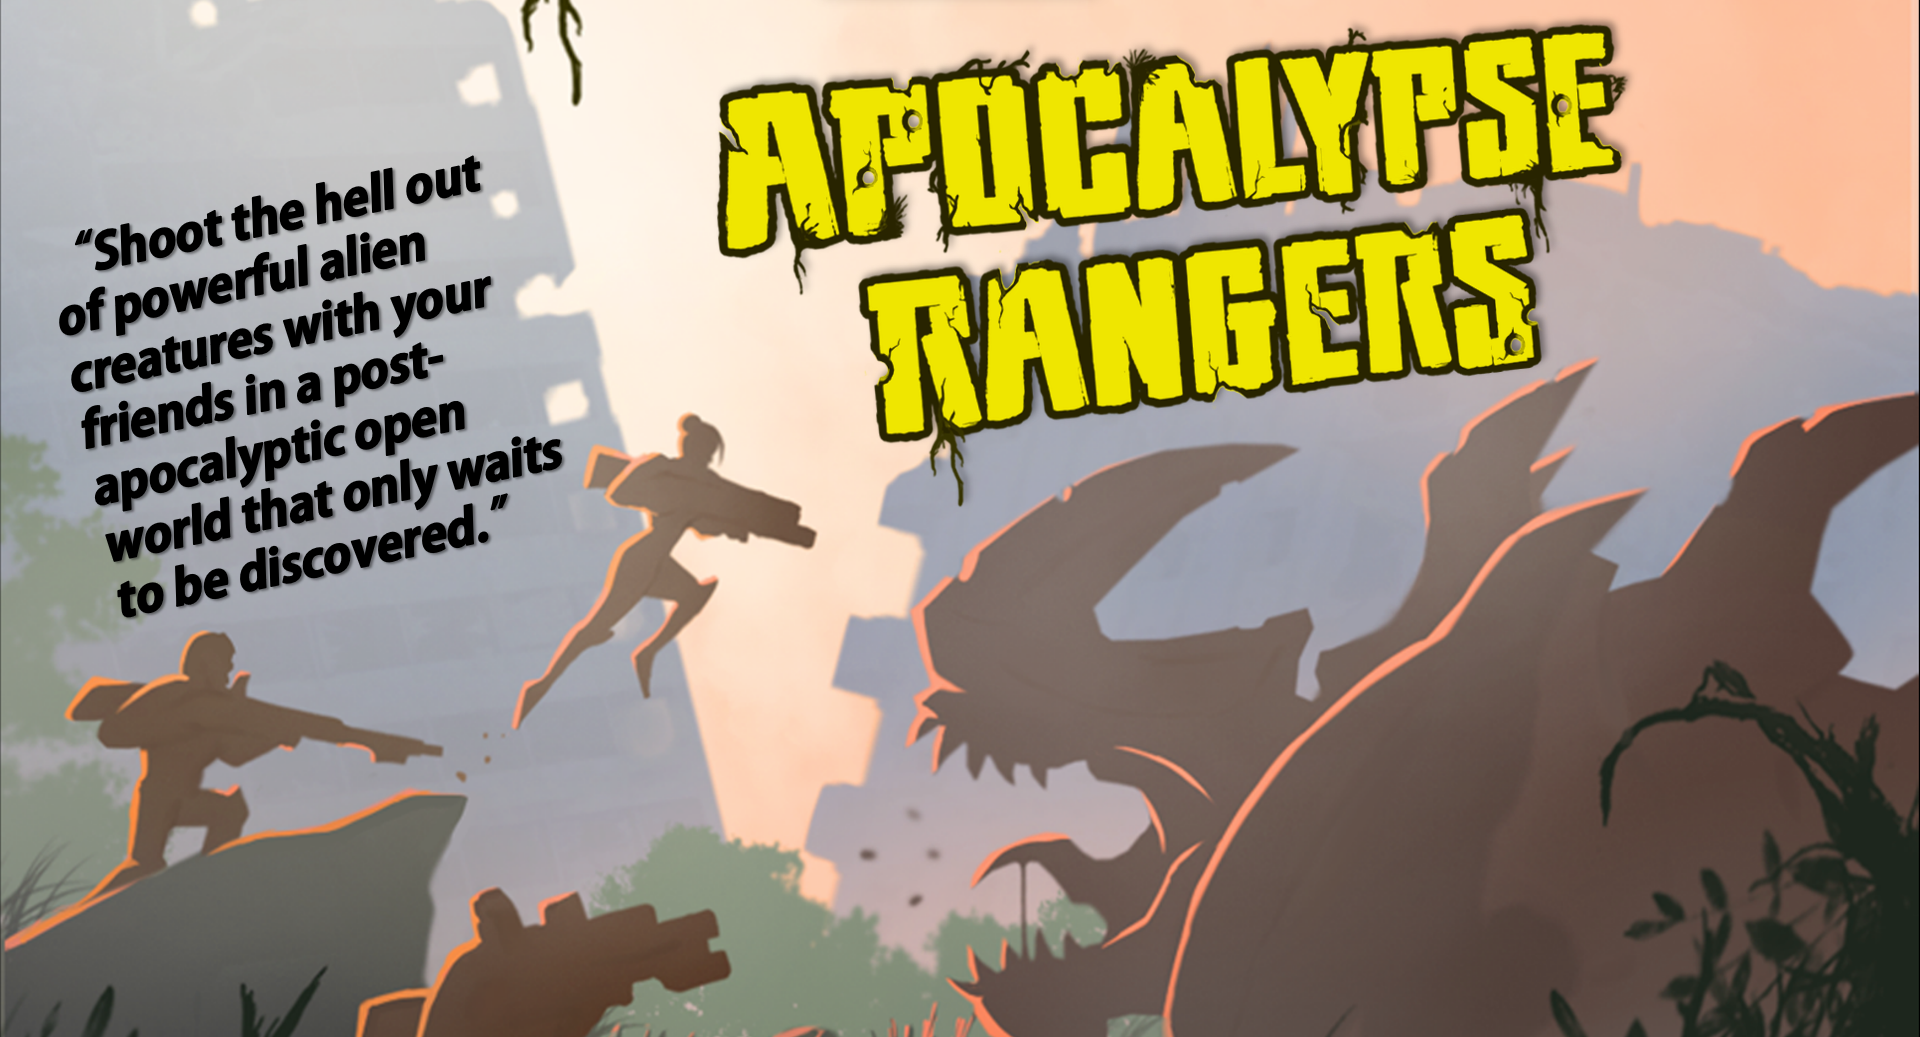 Apocalypse Rangers